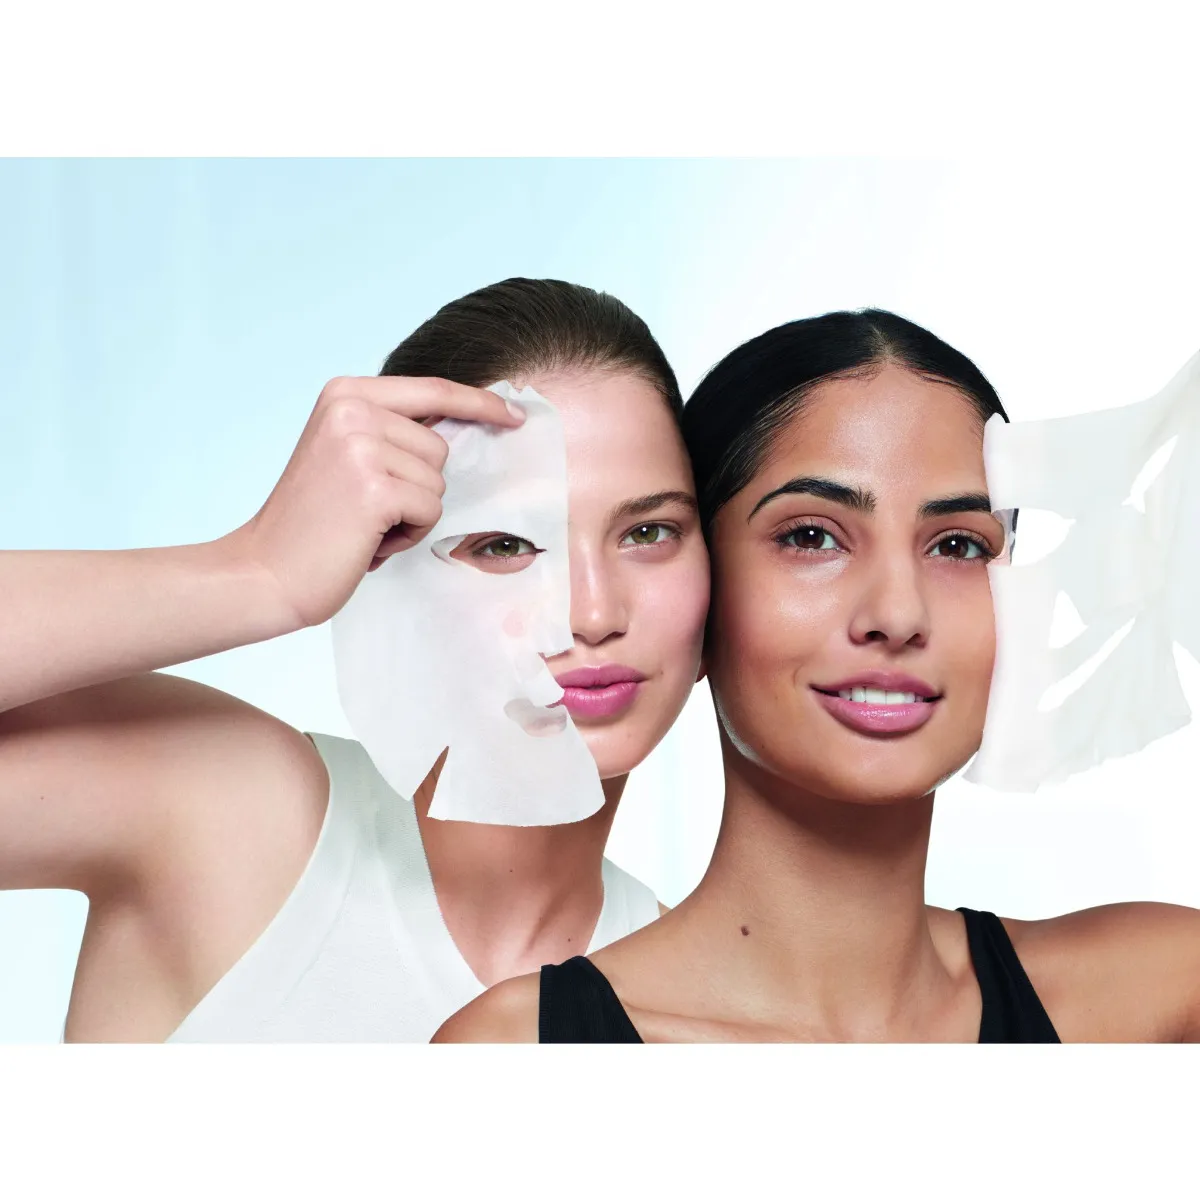 Garnier Skin Naturals Hydra Bomb superhydratační vyplňující textilní maska 28 g